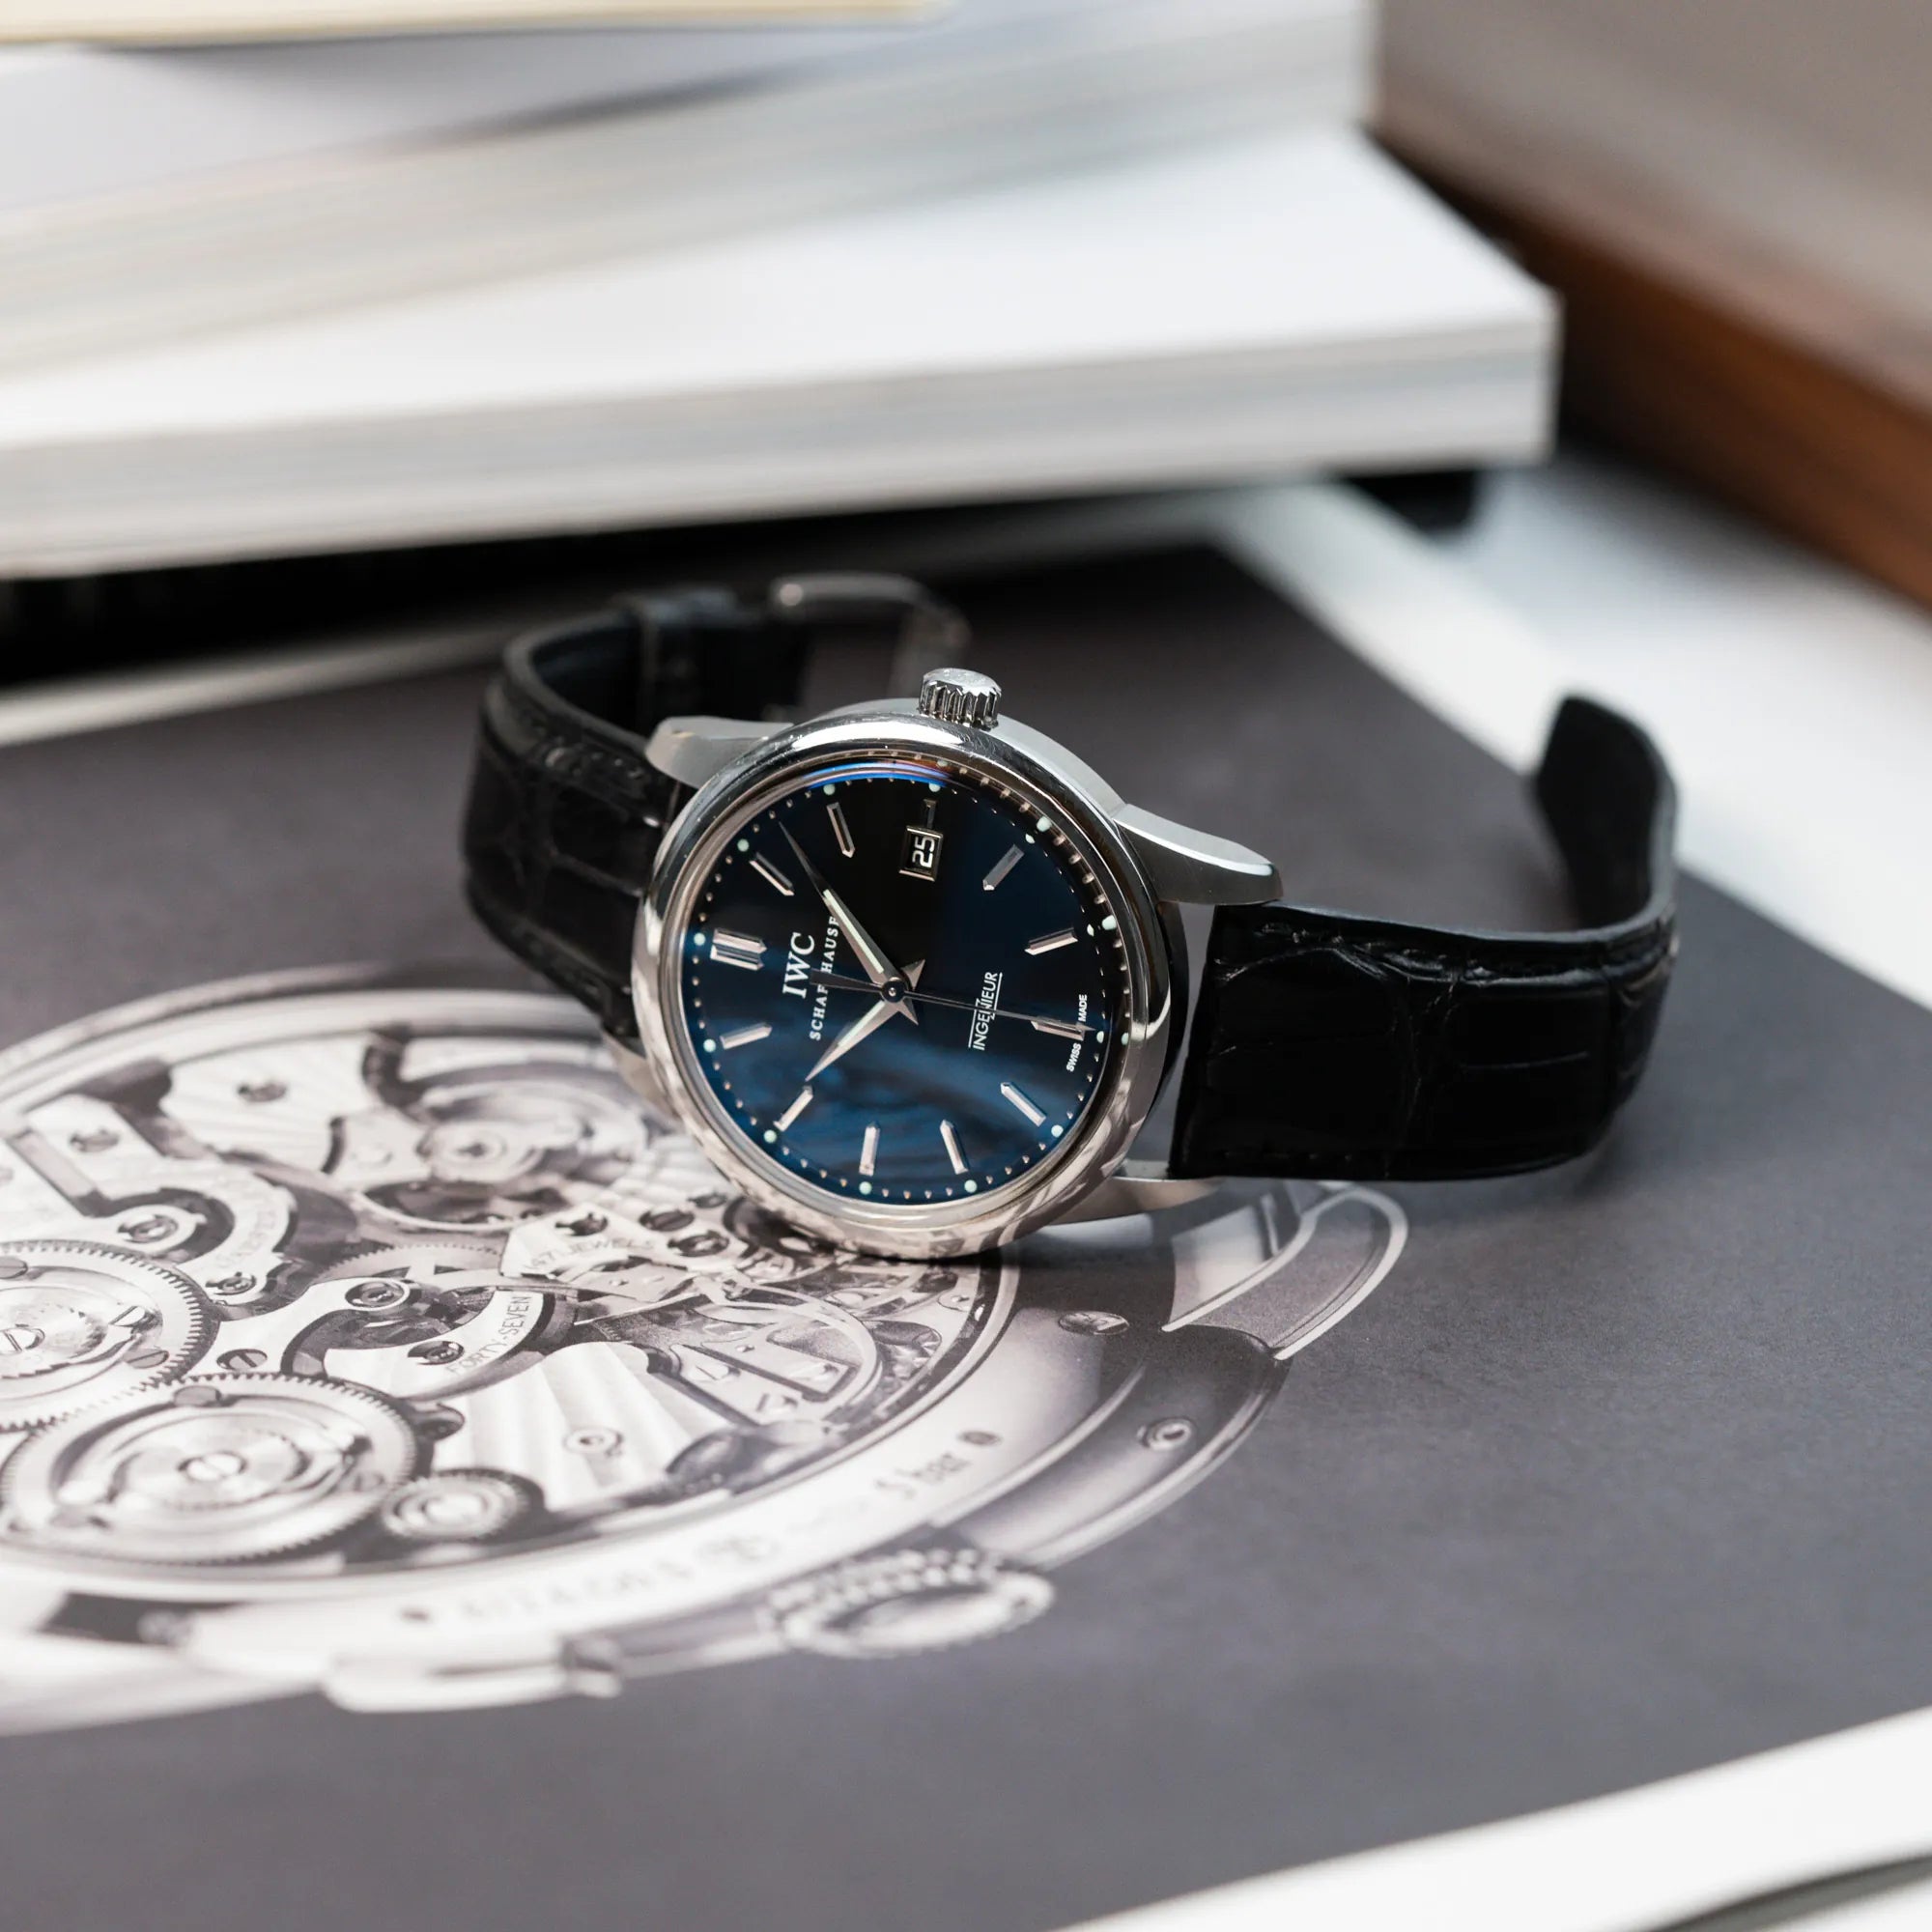 Produktfotografie der liegenden IWC Schaffhausen Uhr "Ingenieur" mit der Referenz IW323301 mit schwarzem Zifferblatt